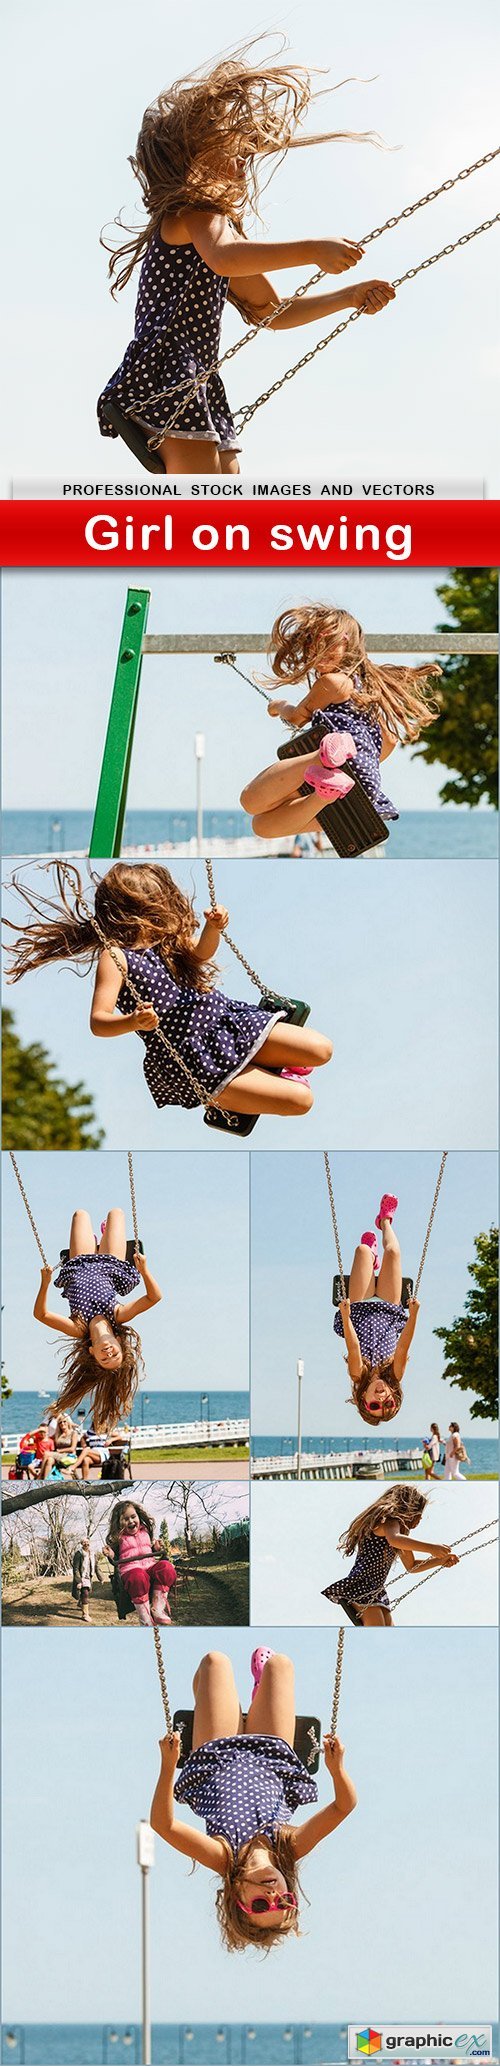 Girl on swing - 8 UHQ JPEG